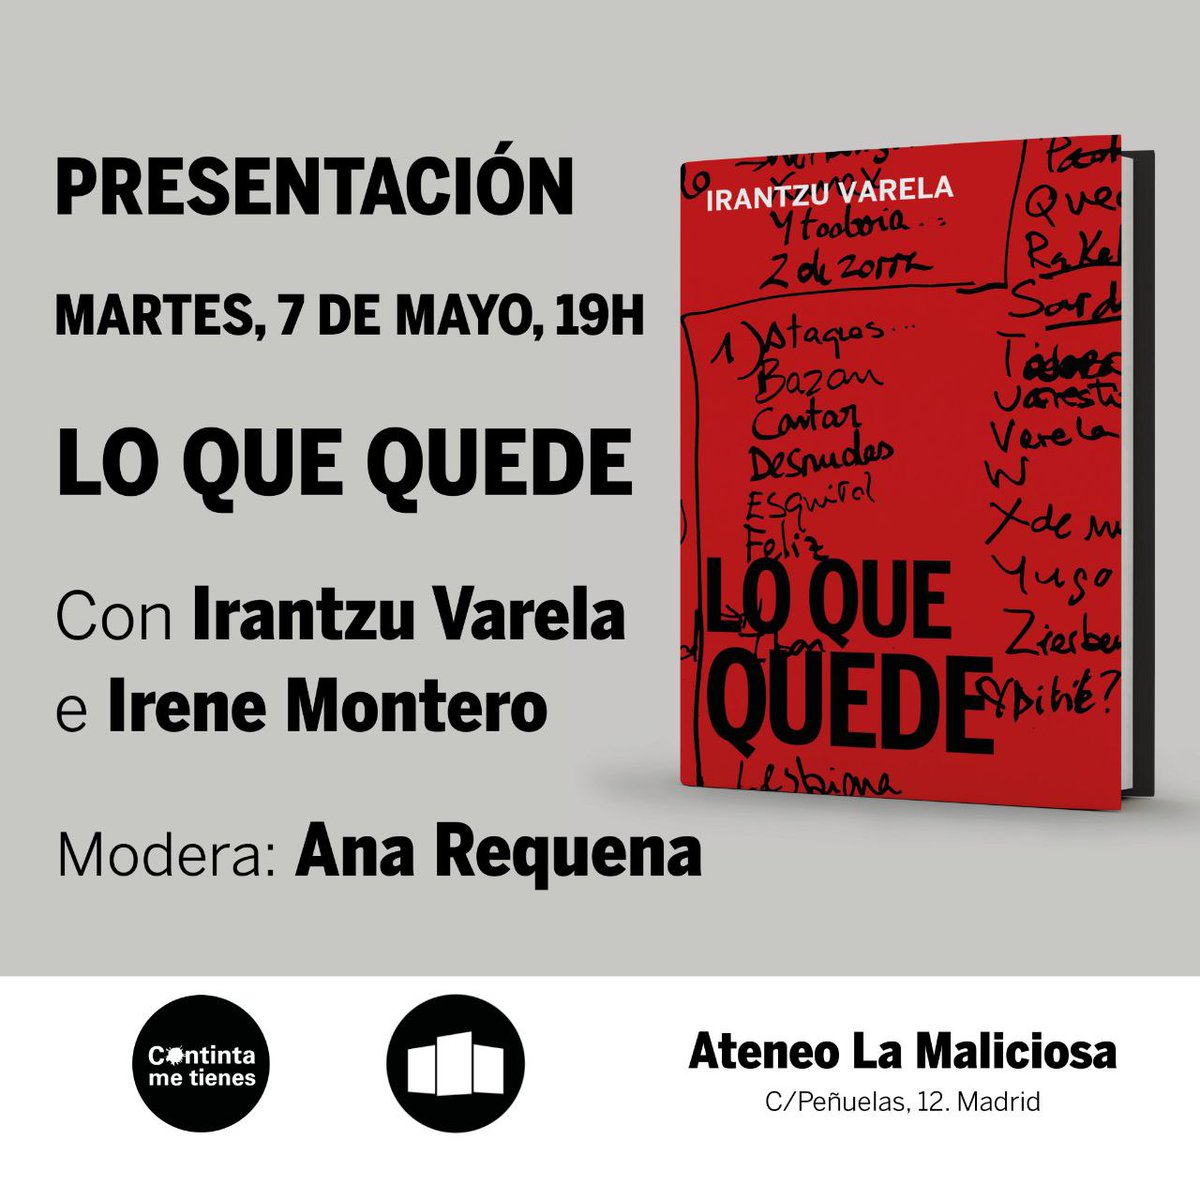 #Audios 🎧 Ya puedes escuchar la presentación del libro Lo que quede @continta_mt Con su autora, @IrantzuVarela @IreneMontero y @RequenaAguilar @AteneoMaliciosa  acortar.link/zRIavK